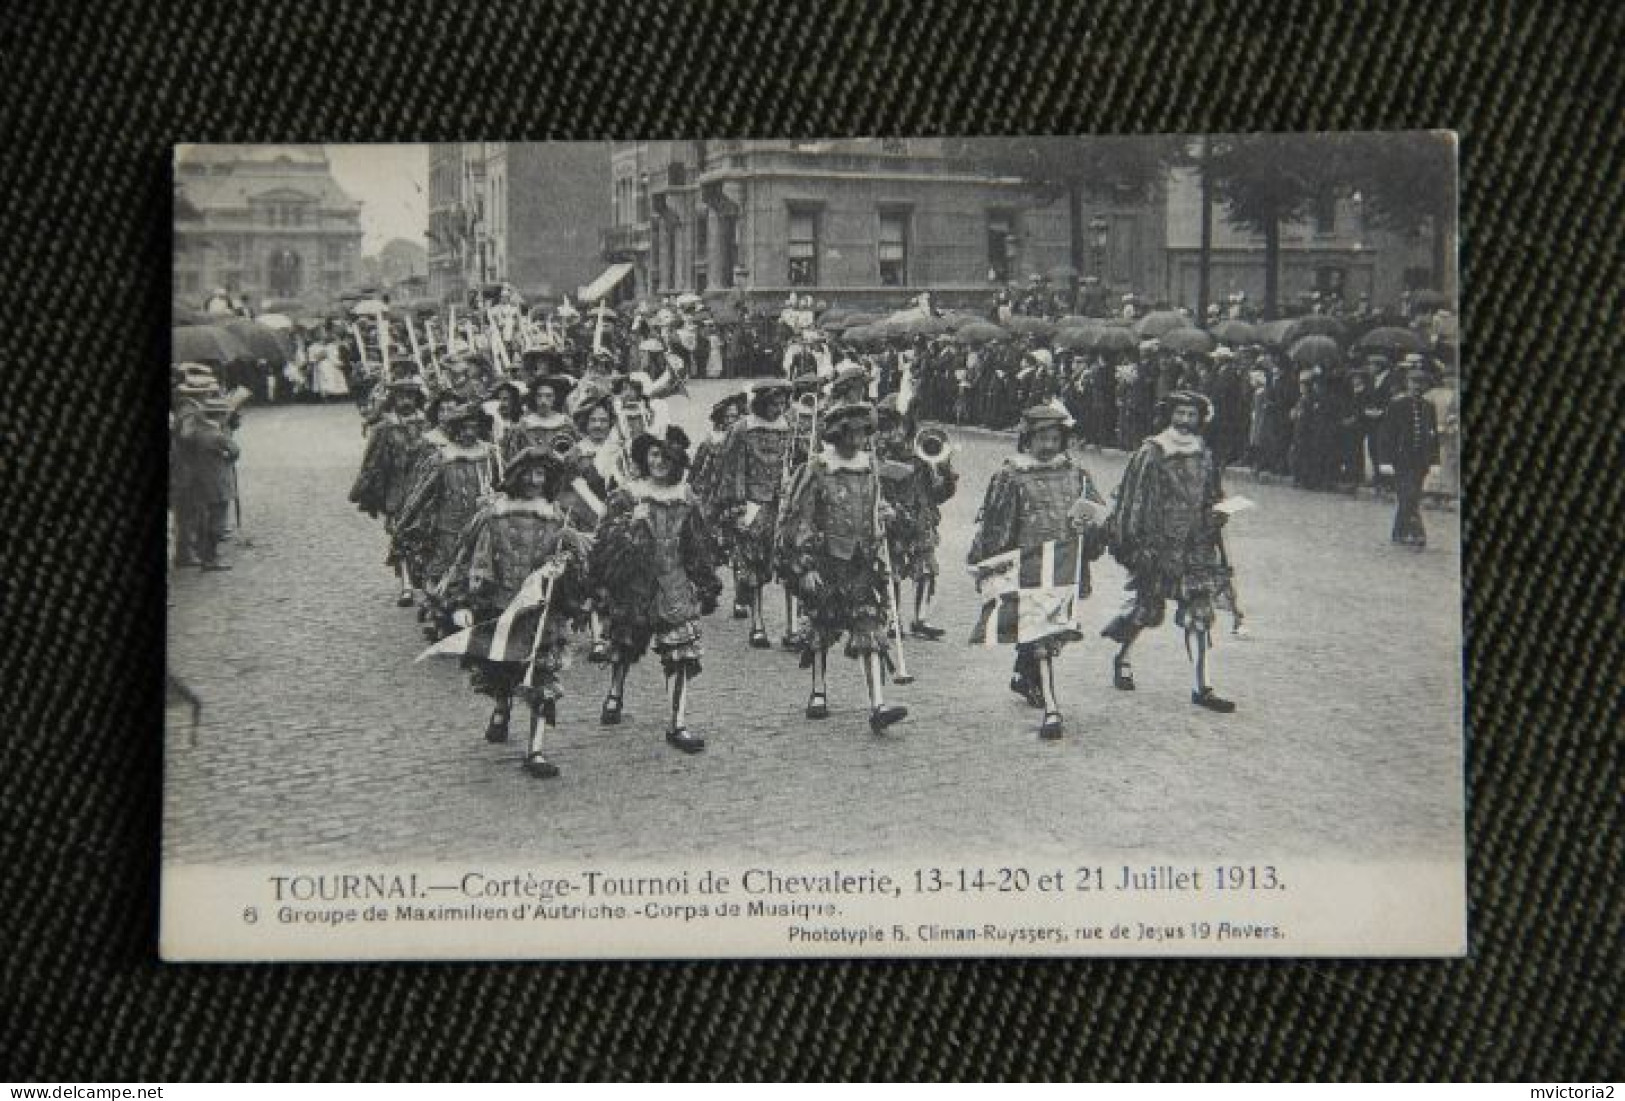 TOURNAI - Cortège Tournoi De Chevalerie, 13 14 20 Et 21 Juillet 1913 ( Groupe De Maximilien D'AUTRICHE). - Doornik